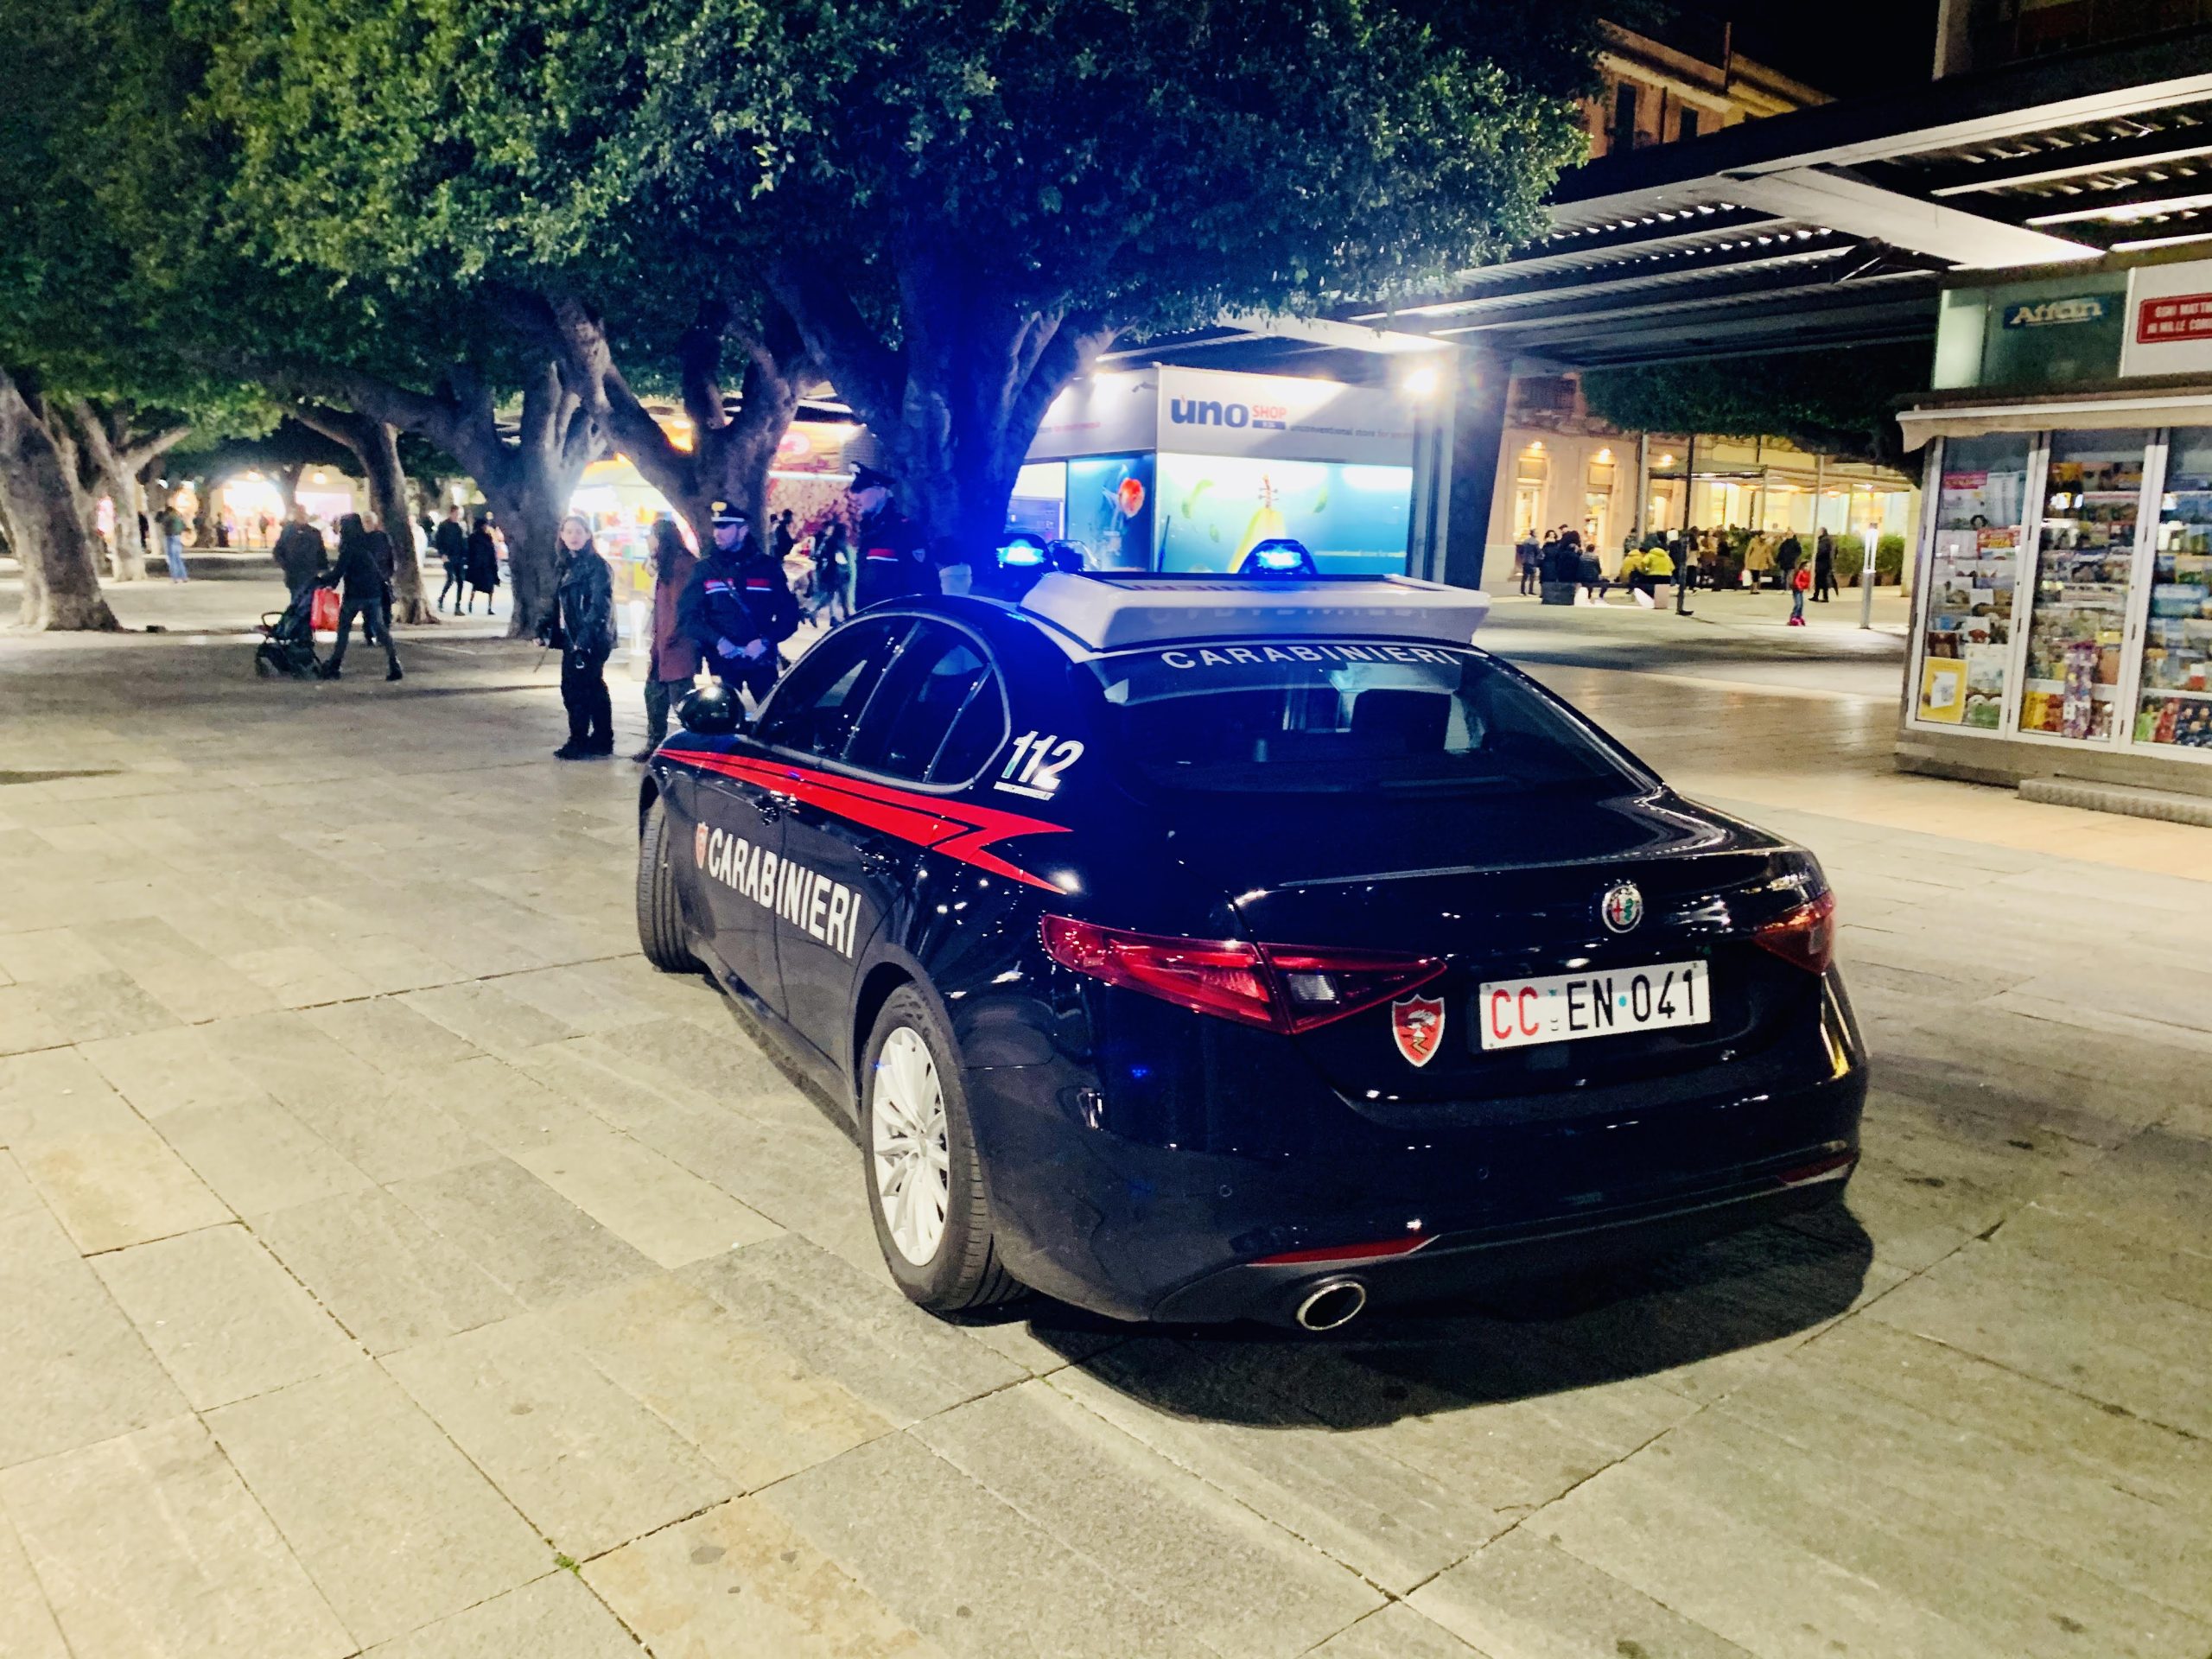 Piazza Cairoli adesso è più sicura con Carabinieri e Polizia